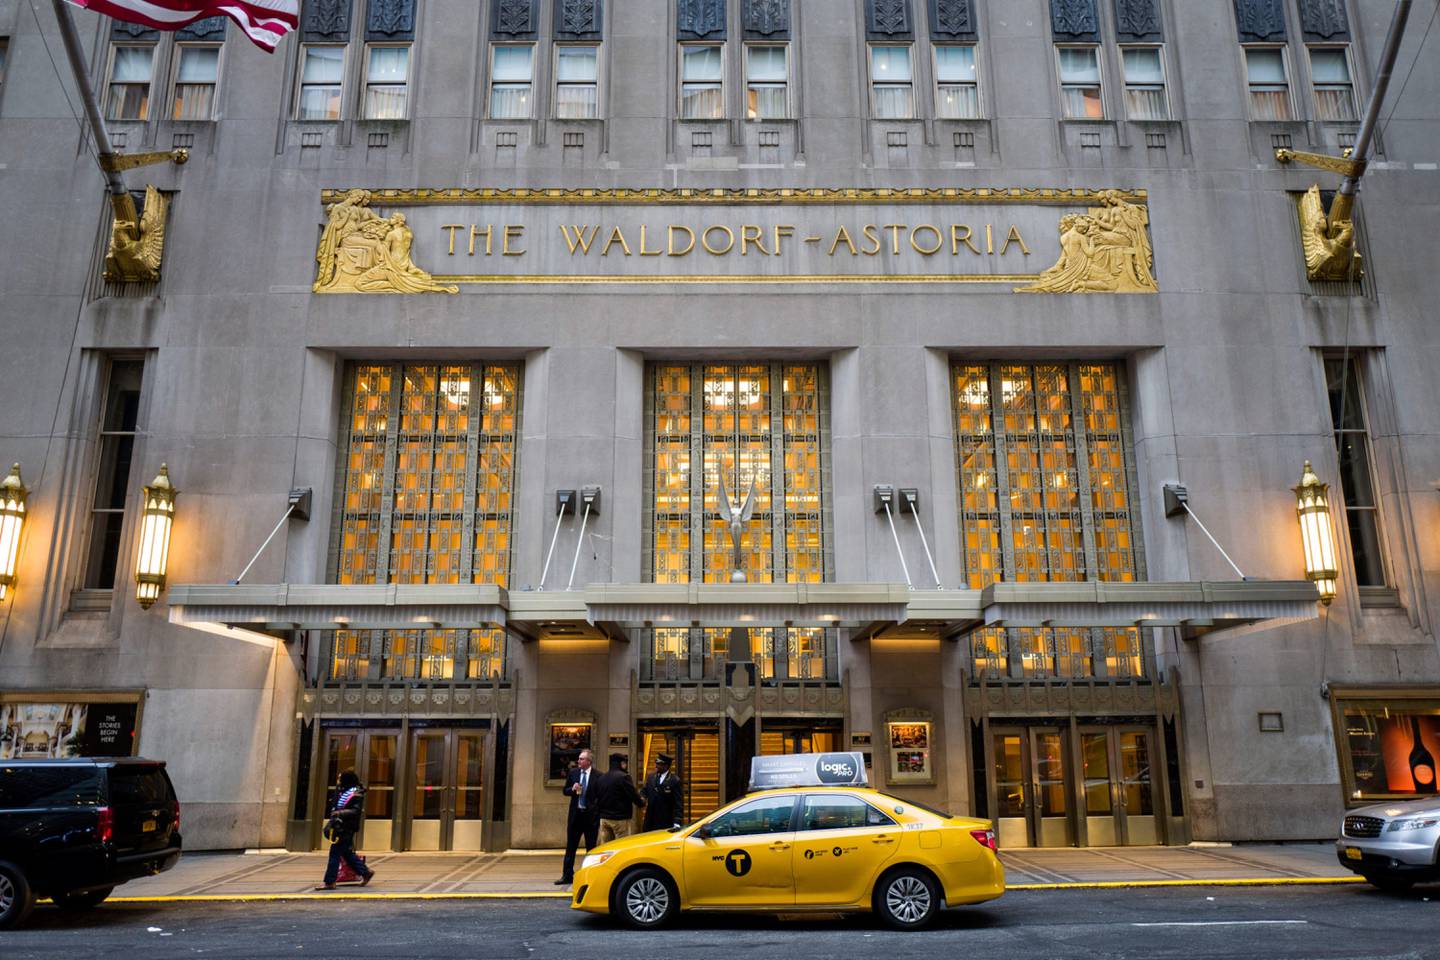 NUEVA YORK, NY - 28 DE FEBRERO: Una vista exterior del Hotel Waldorf Astoria, el 28 de febrero de 2017 en la ciudad de Nueva York.